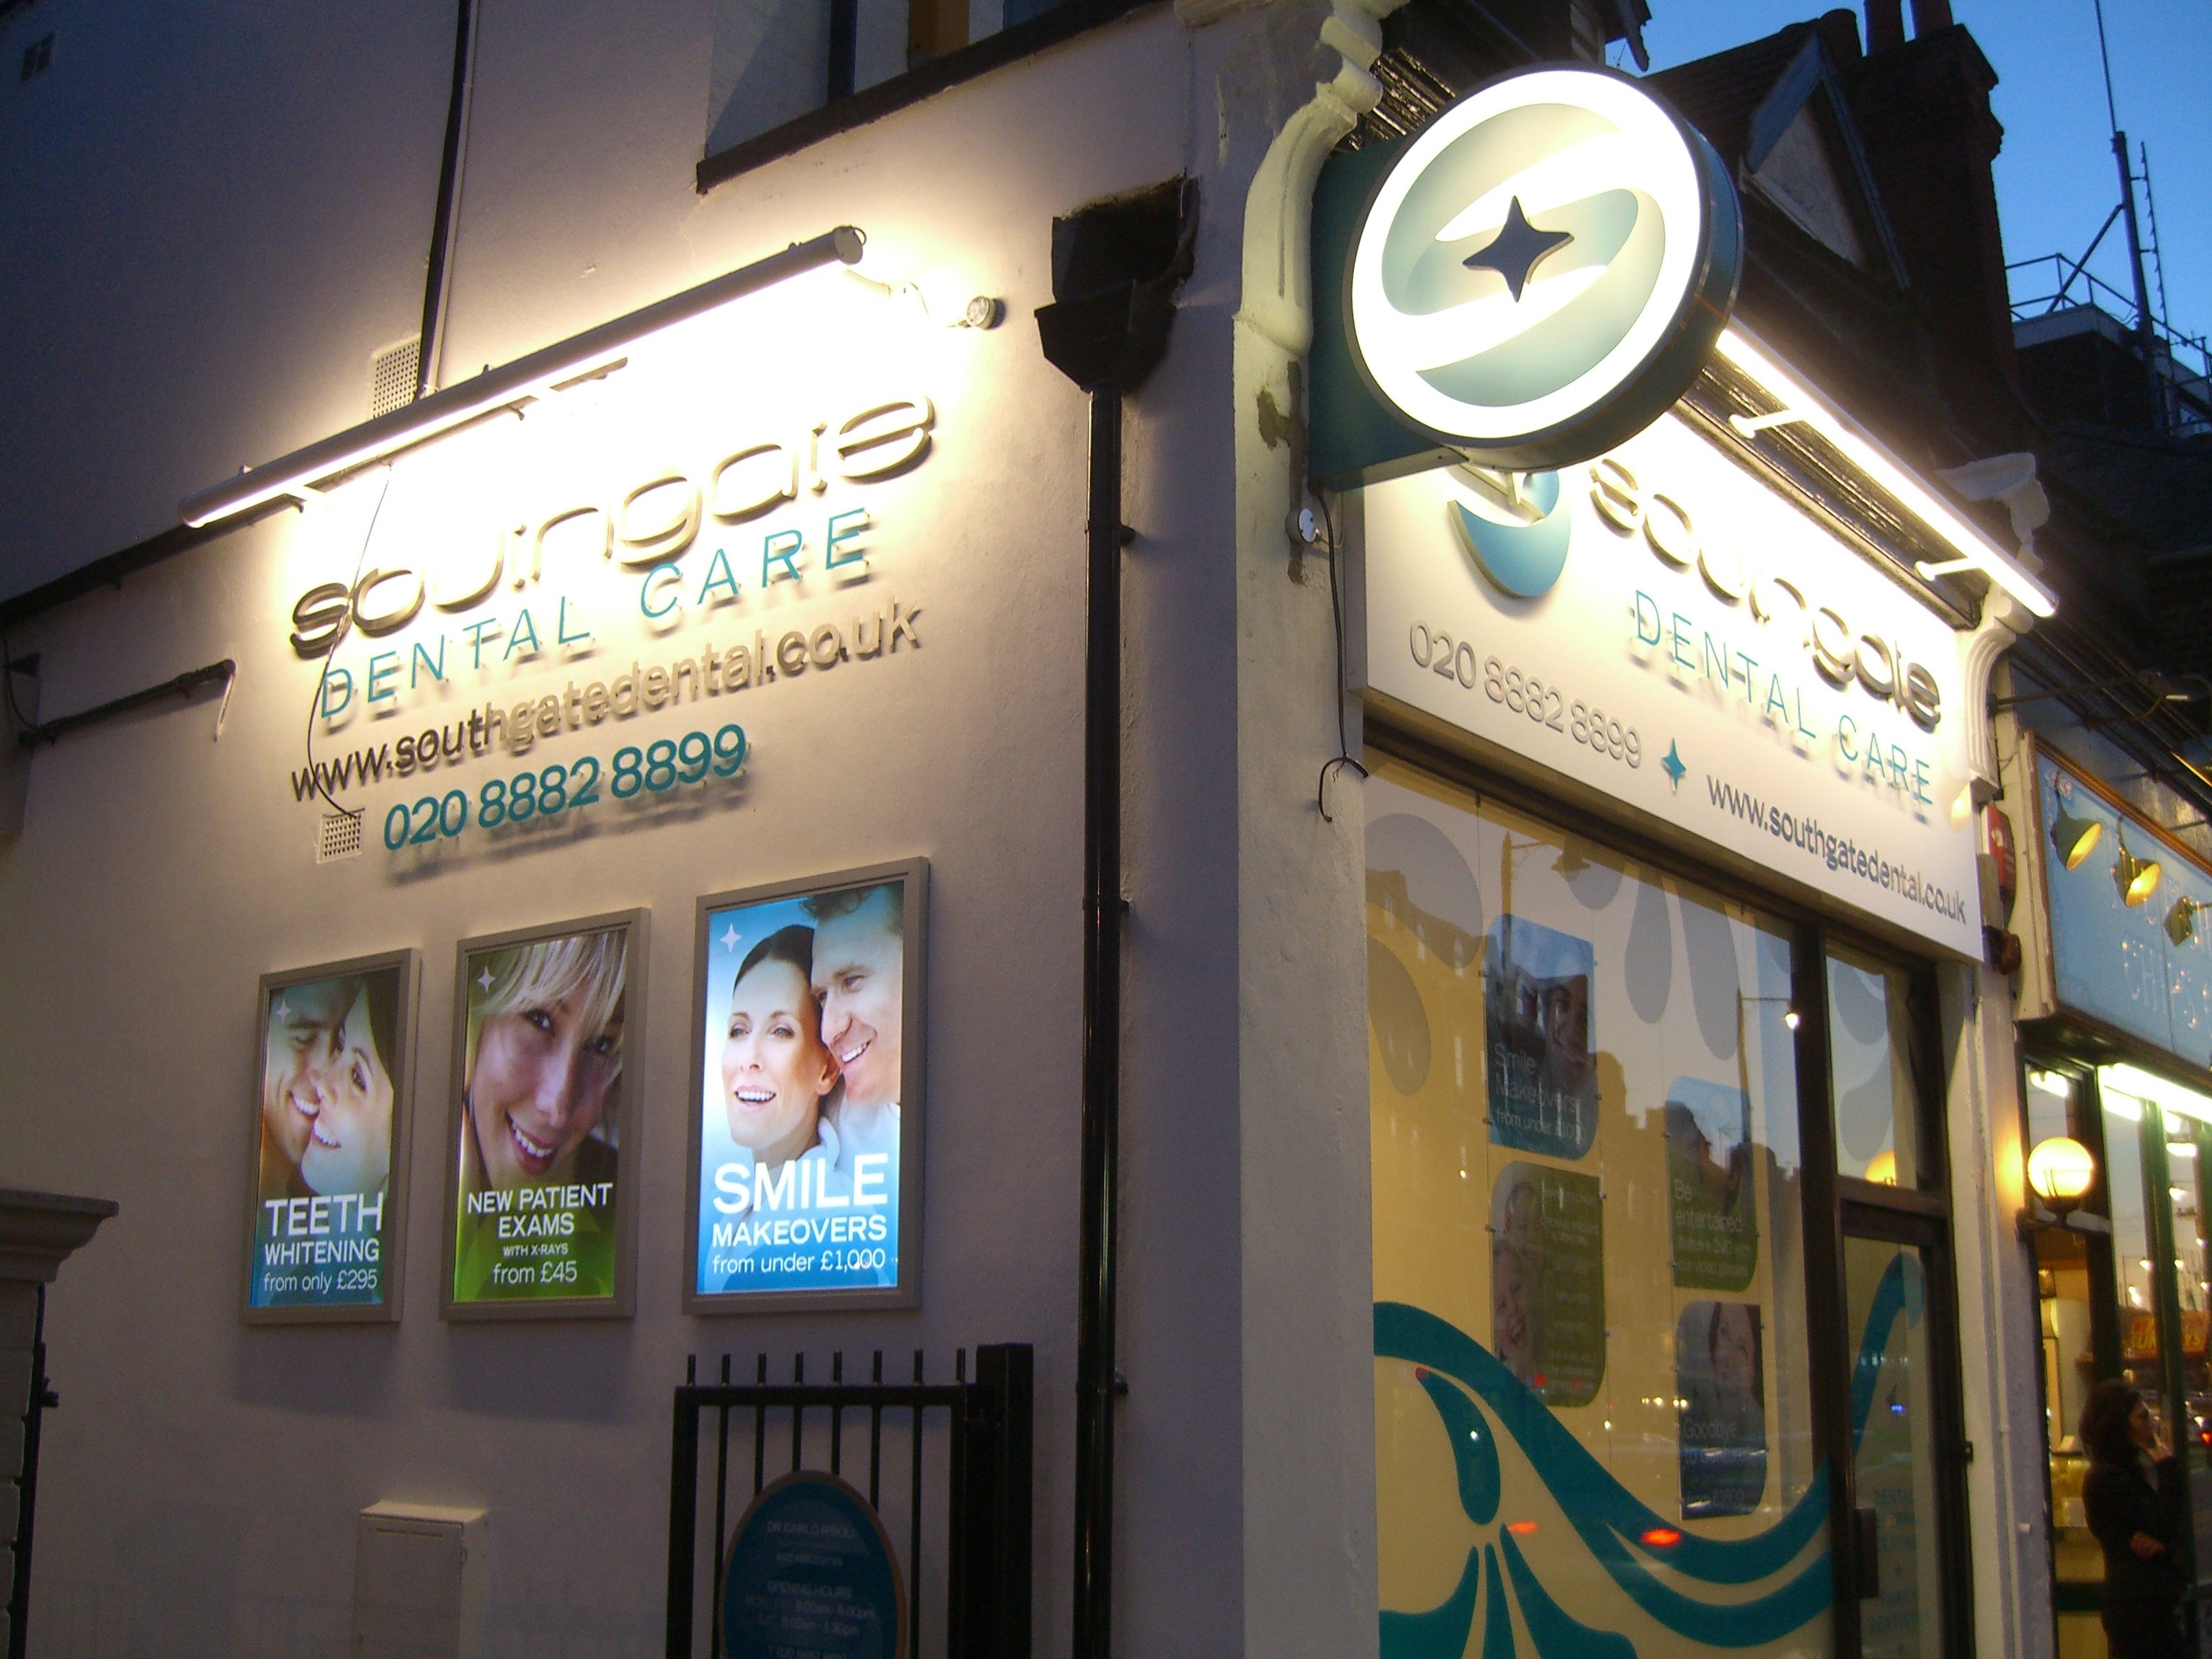 Southgate Dental Care in London